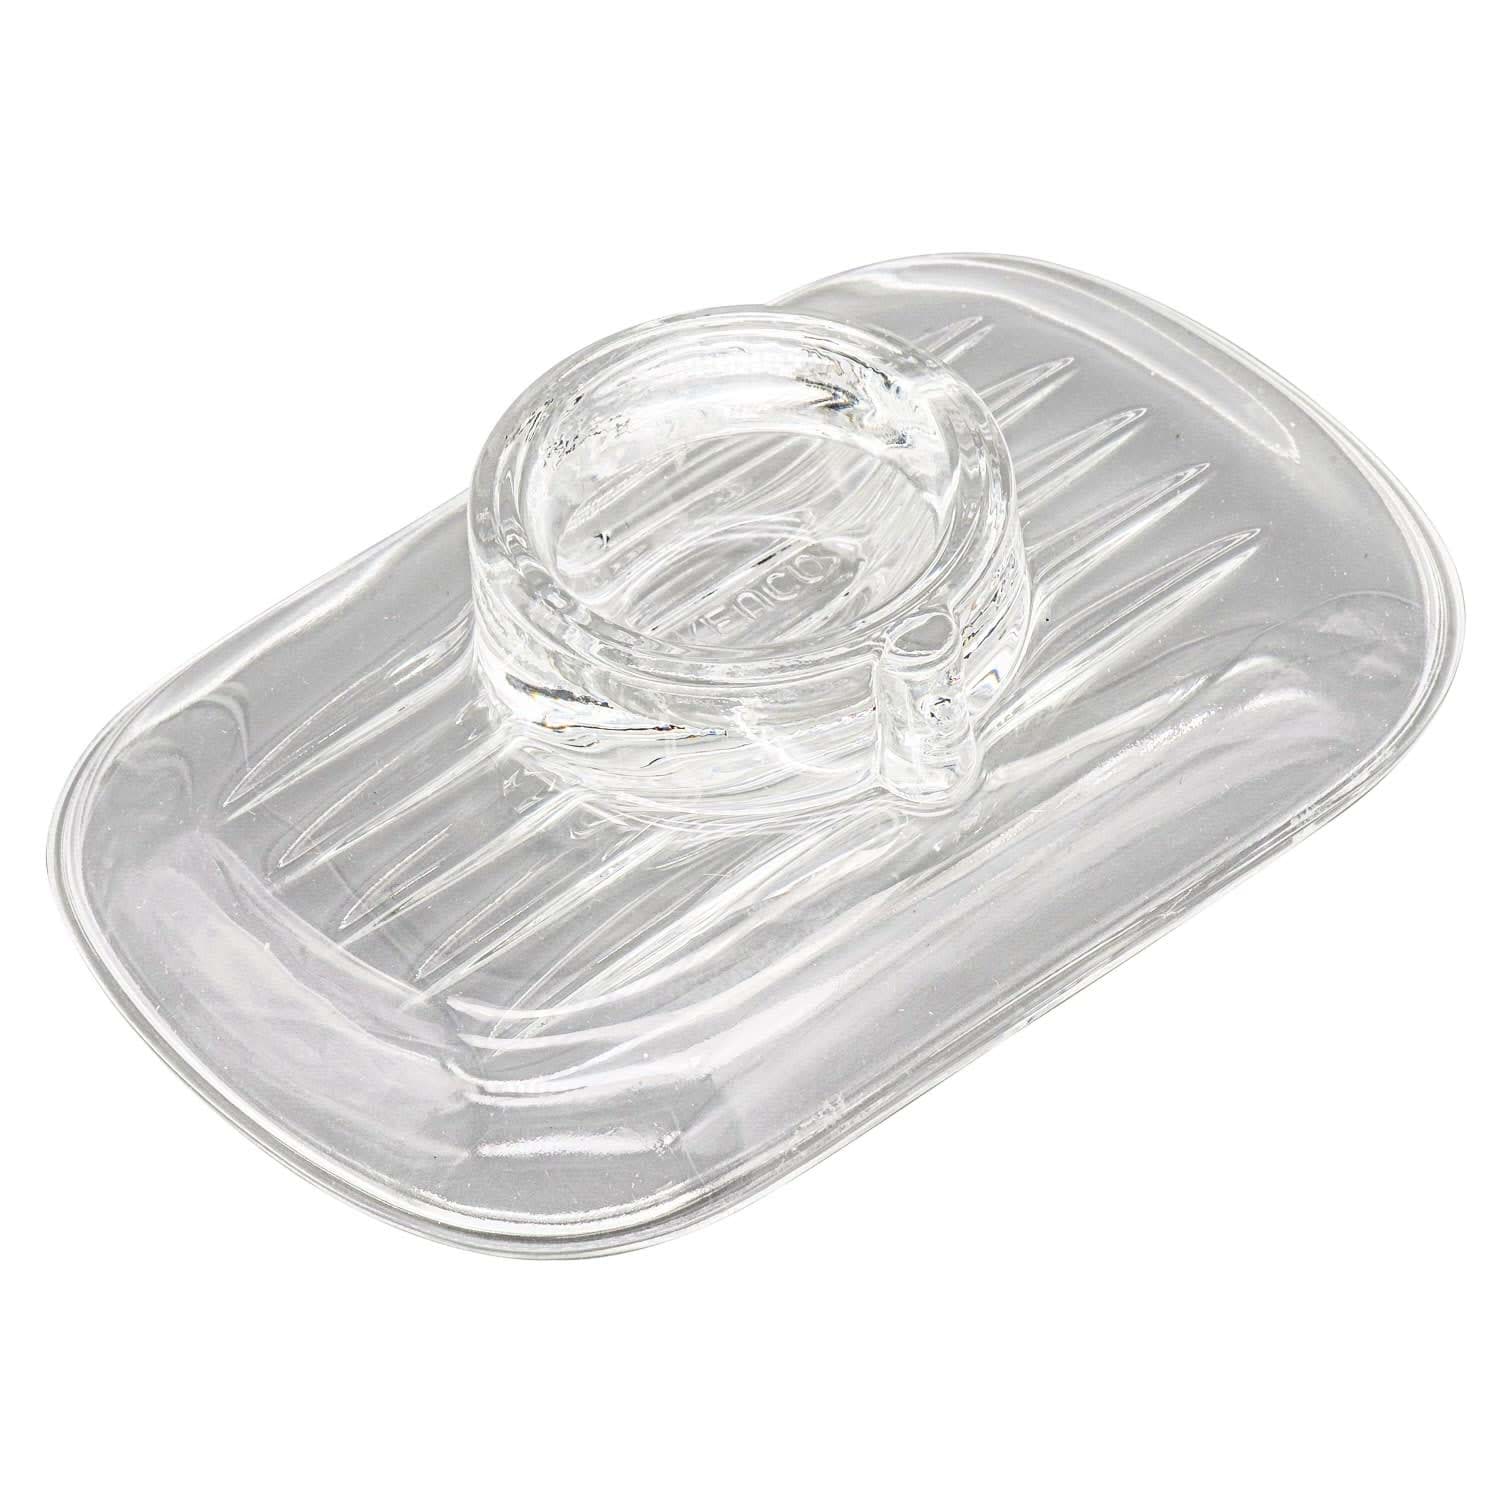 εικόνα του KEUCO Apollo real crystal soap dish 00655009000